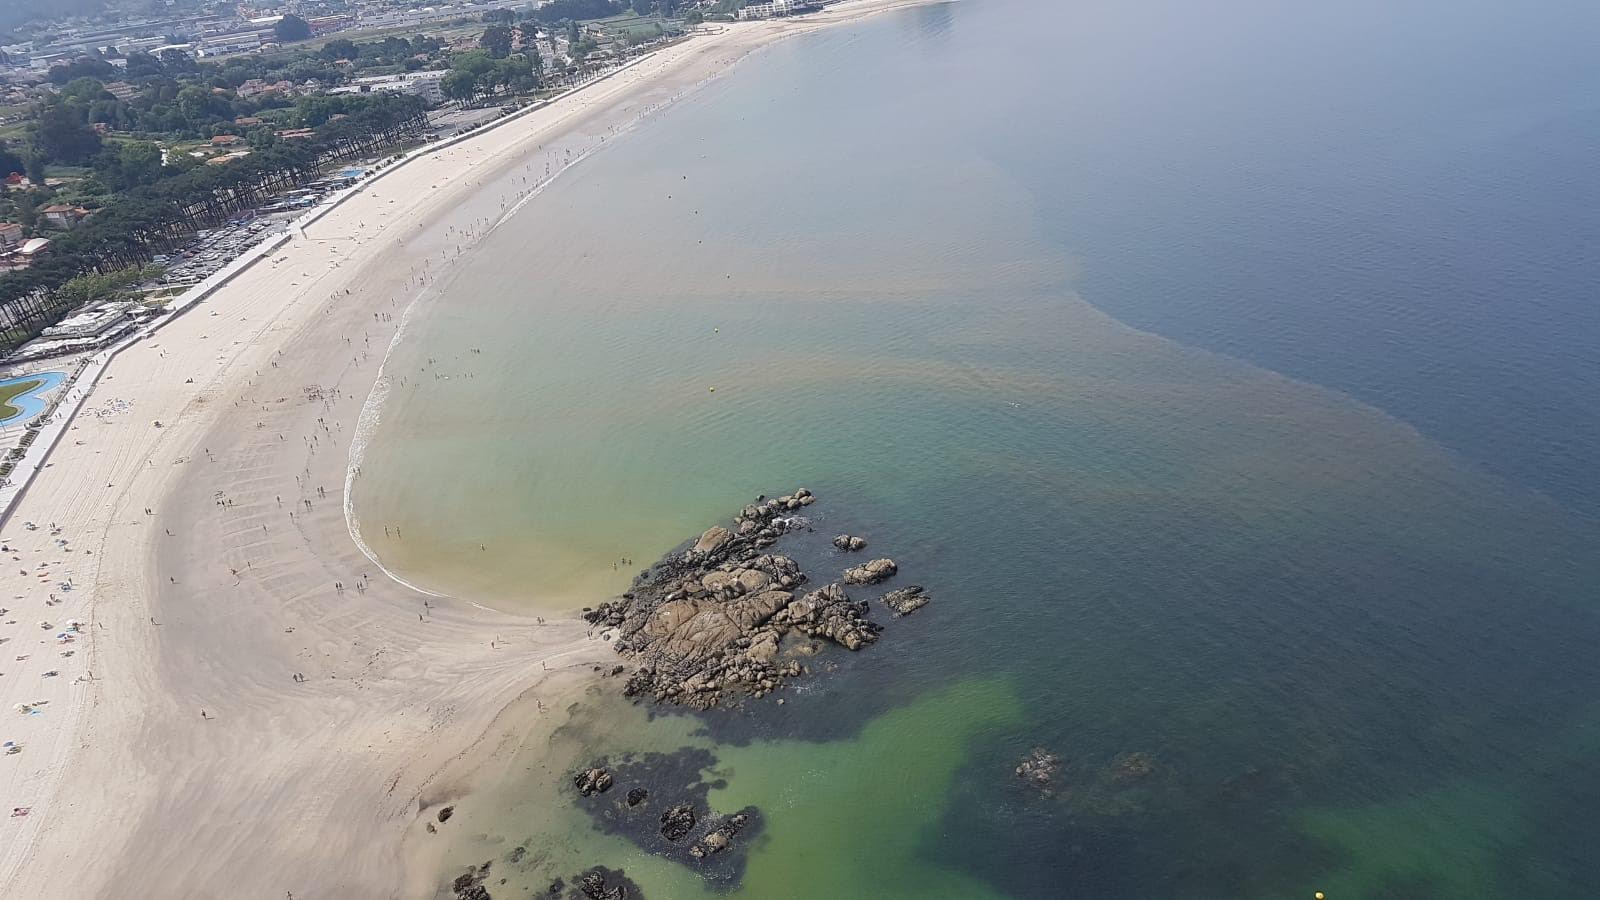 Imagen aérea de la floración masiva acontecida en 2018 en la playa de Samil. Imagen: Subdirección Xeral de Gardacostas de Galicia – Servizo de busca, salvamento marítimo e loita contra a contaminación / IEO